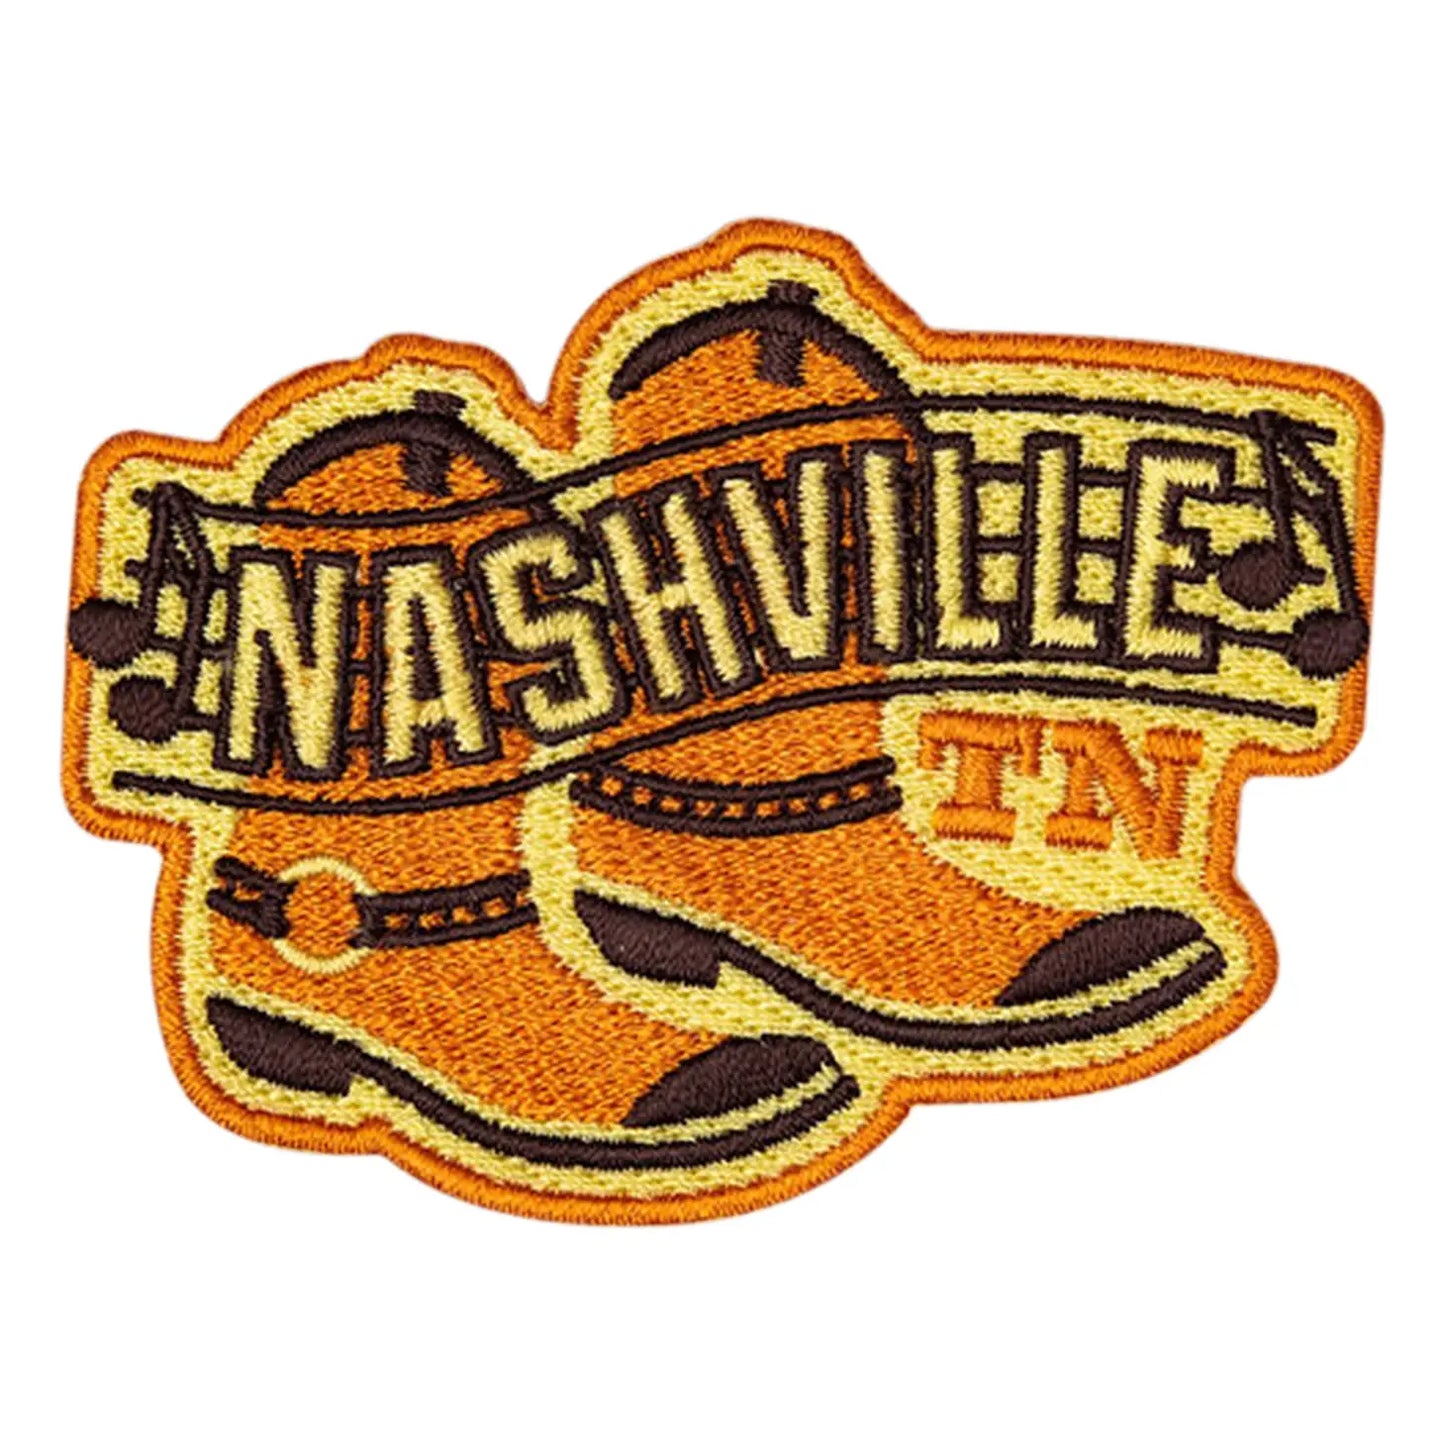 Nashville Boots Patch